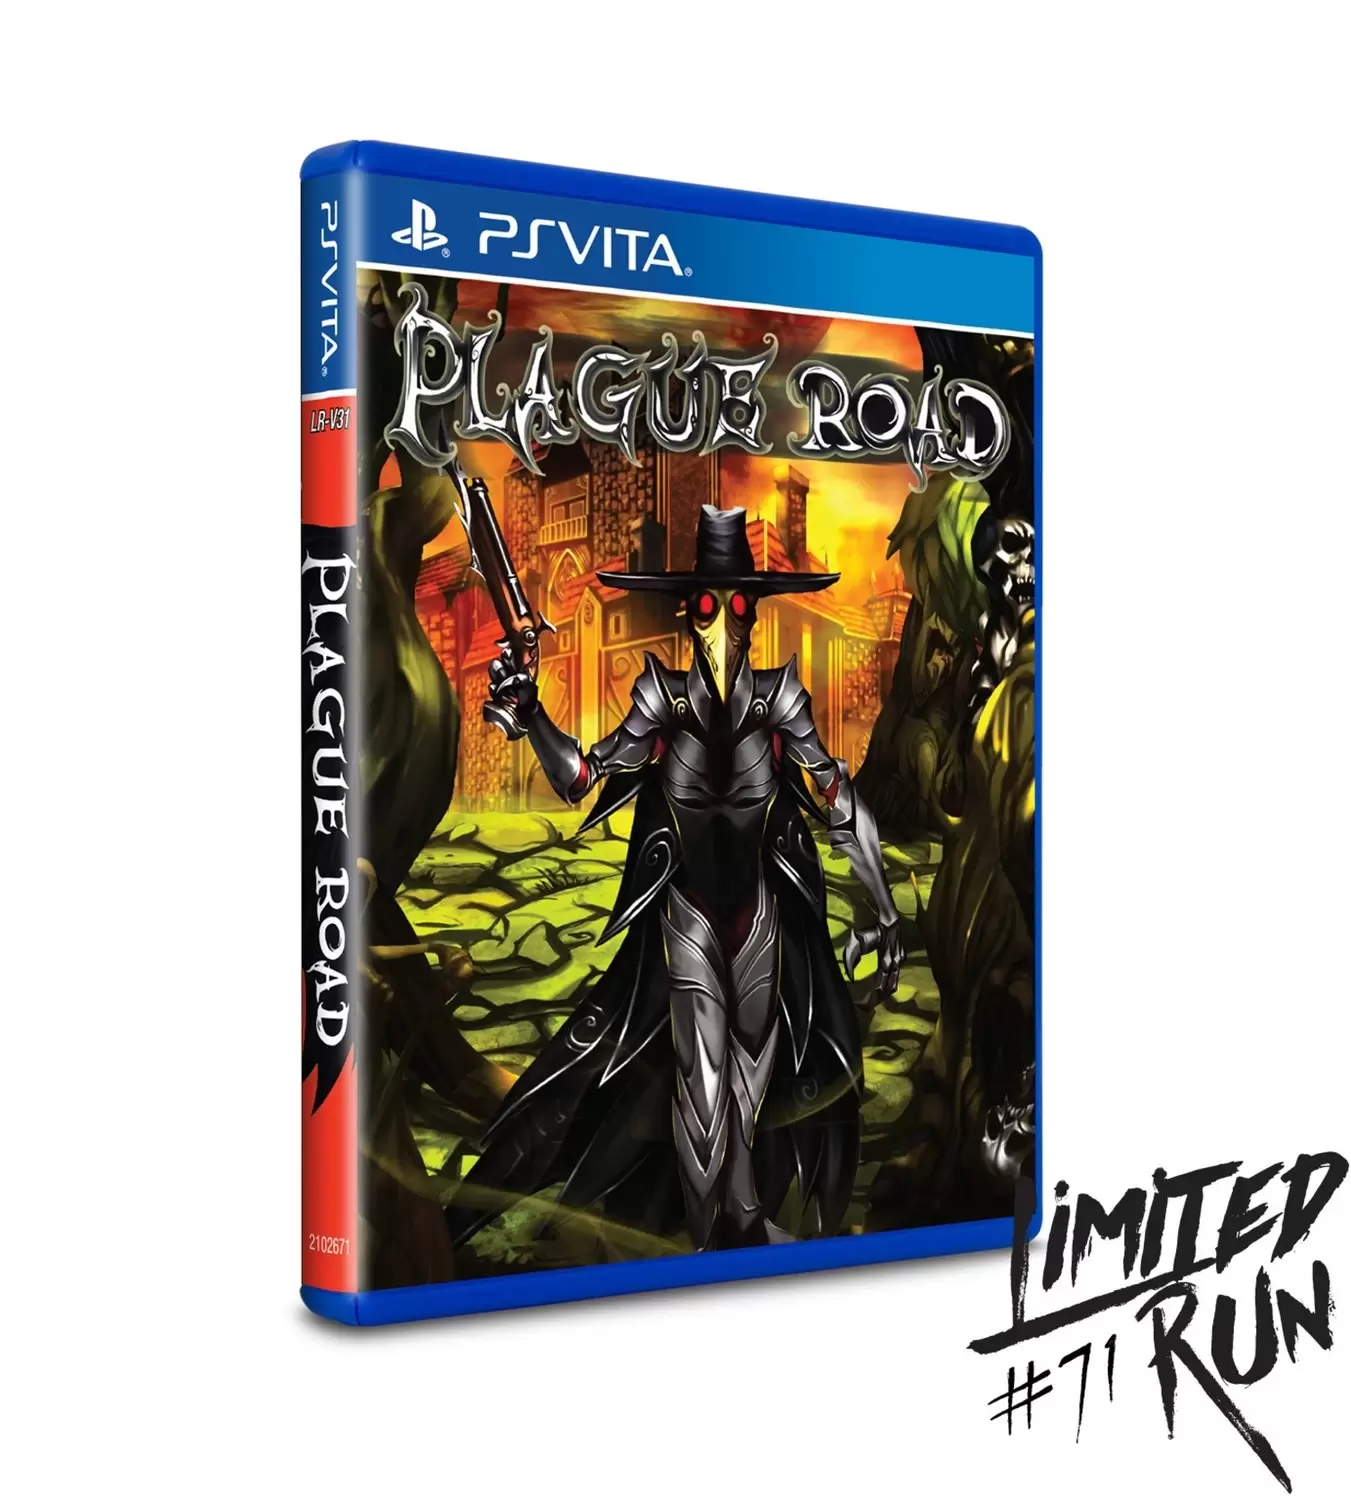 PS Vita Games - Plague Road